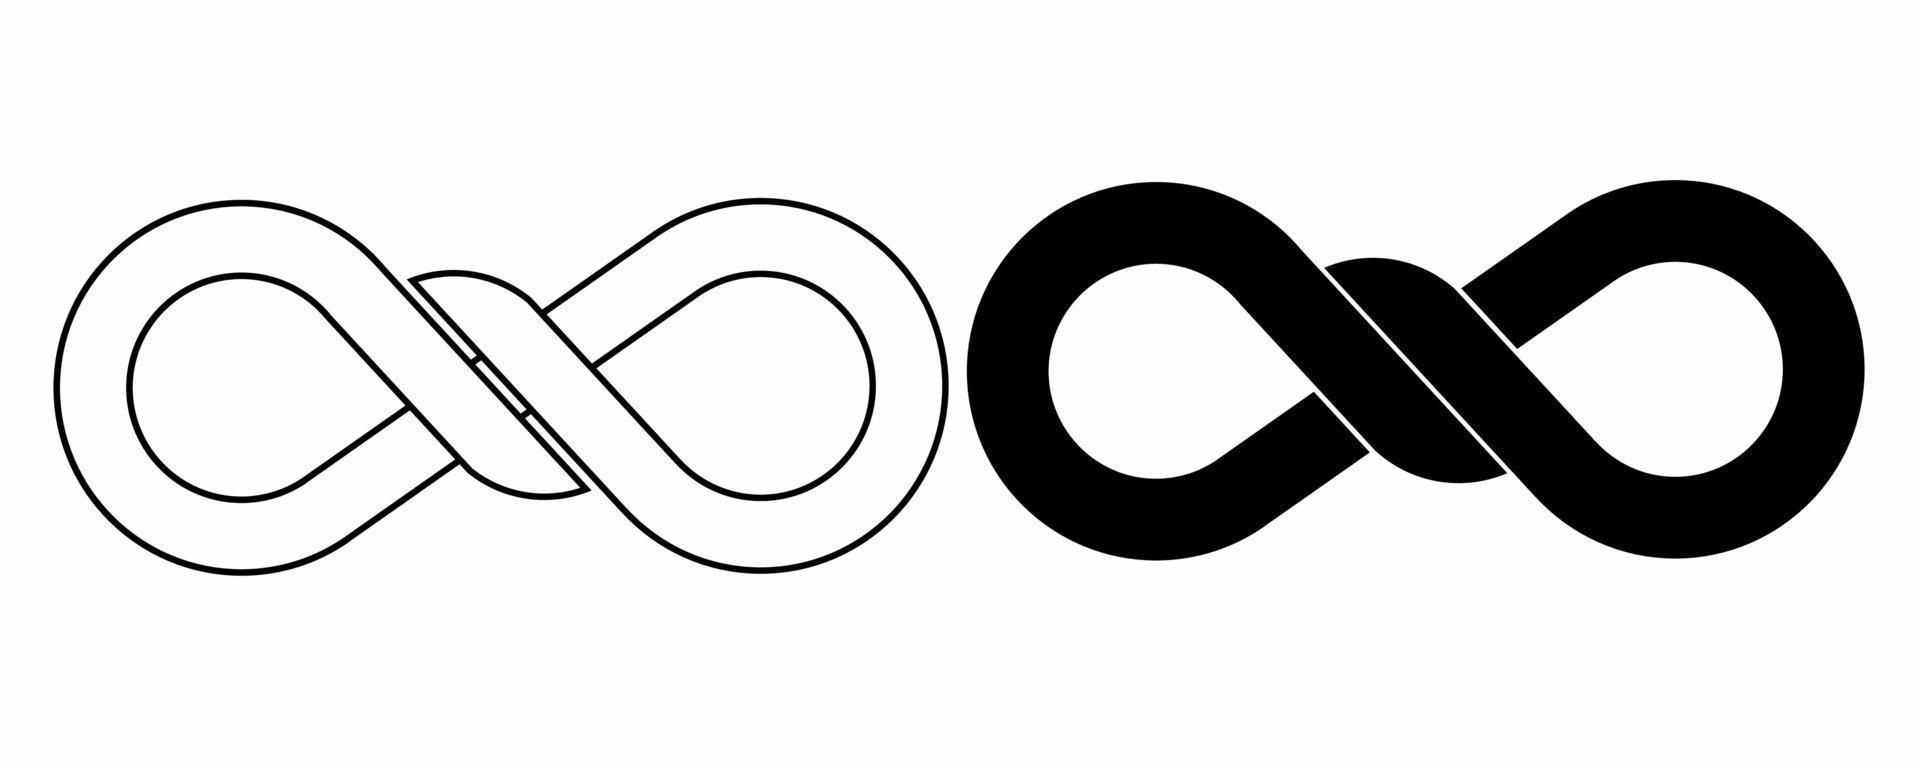 Umriss Silhouette Infinity-Knoten-Icon-Set isoliert auf weißem Hintergrund vektor